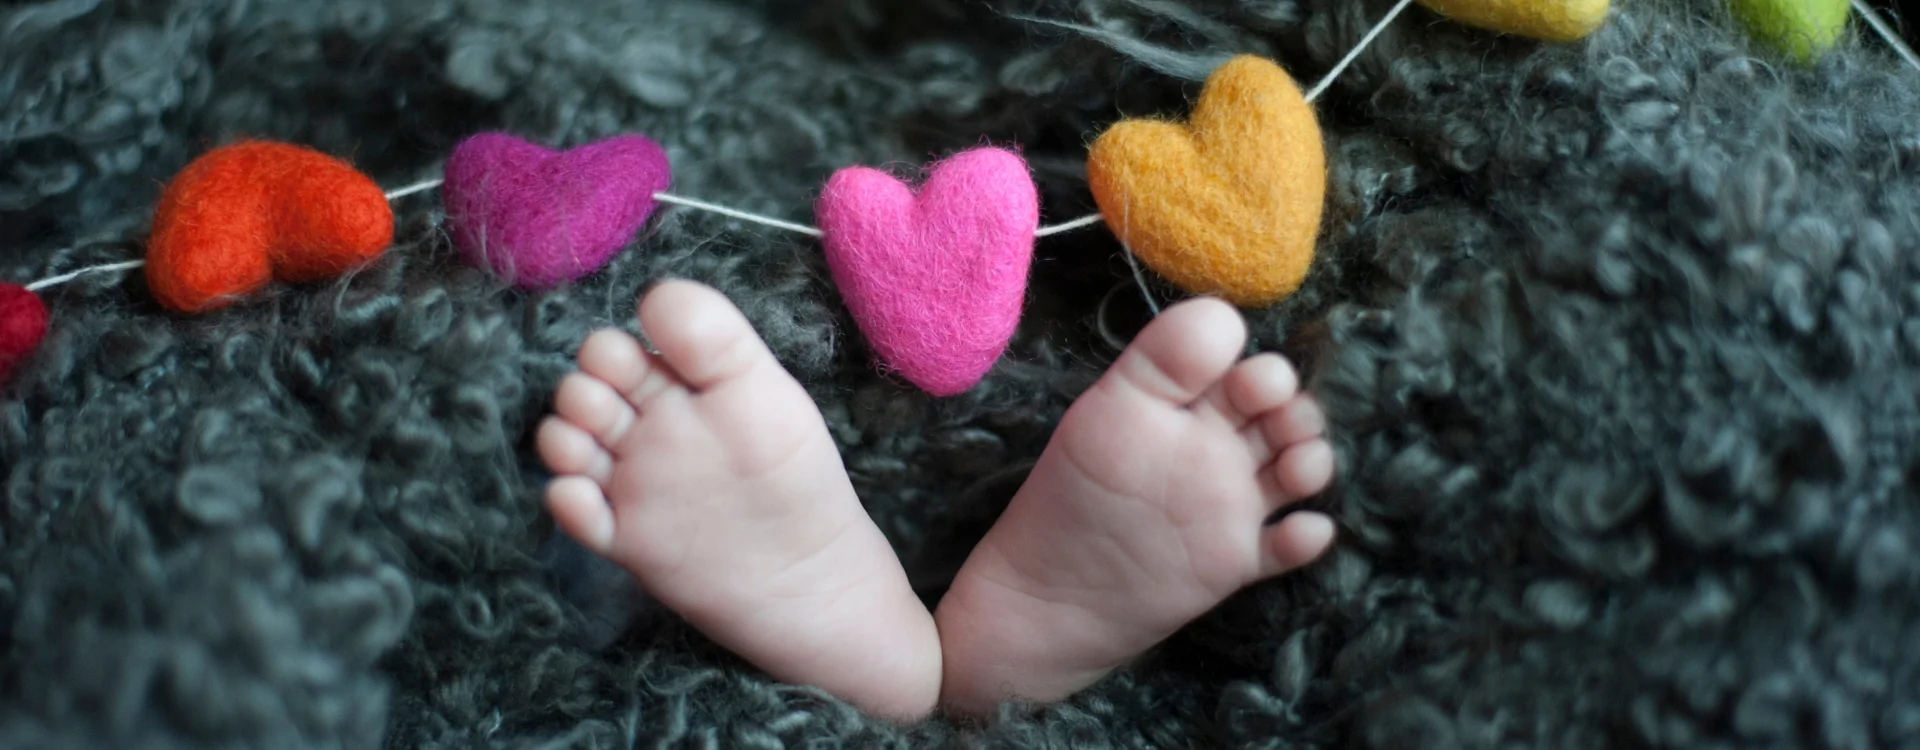 Zdrowe stopy dziecka – co robić, a czego unikać?